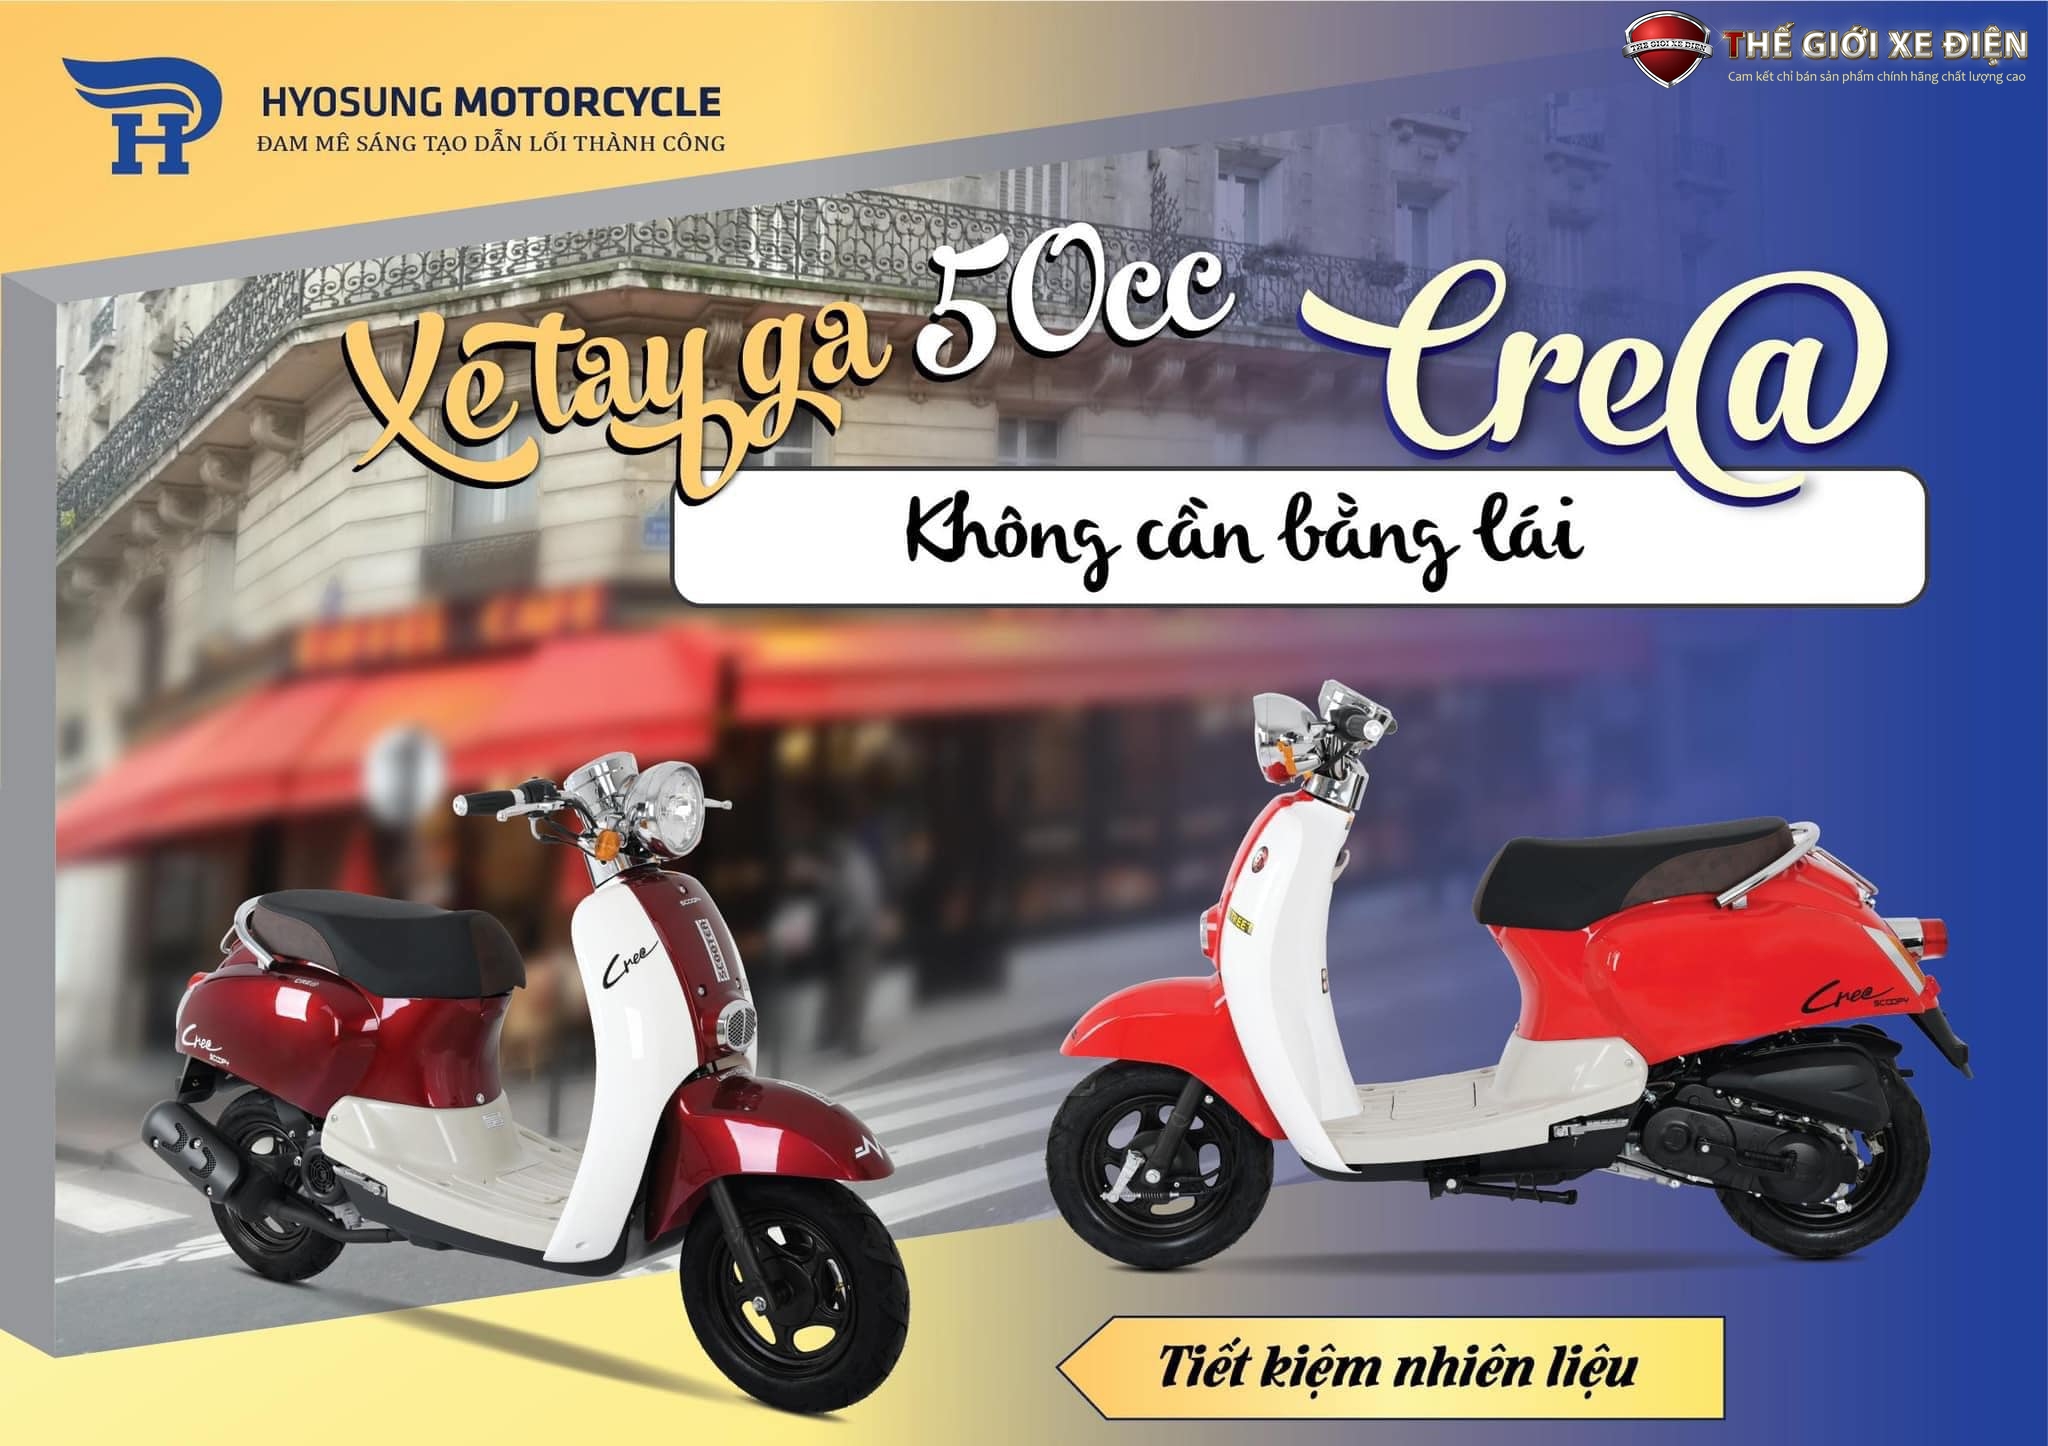 So Sánh 2 Mẫu Xe Tay Ga 50cc Crea Hyosung Và Scoopy Việt Thái